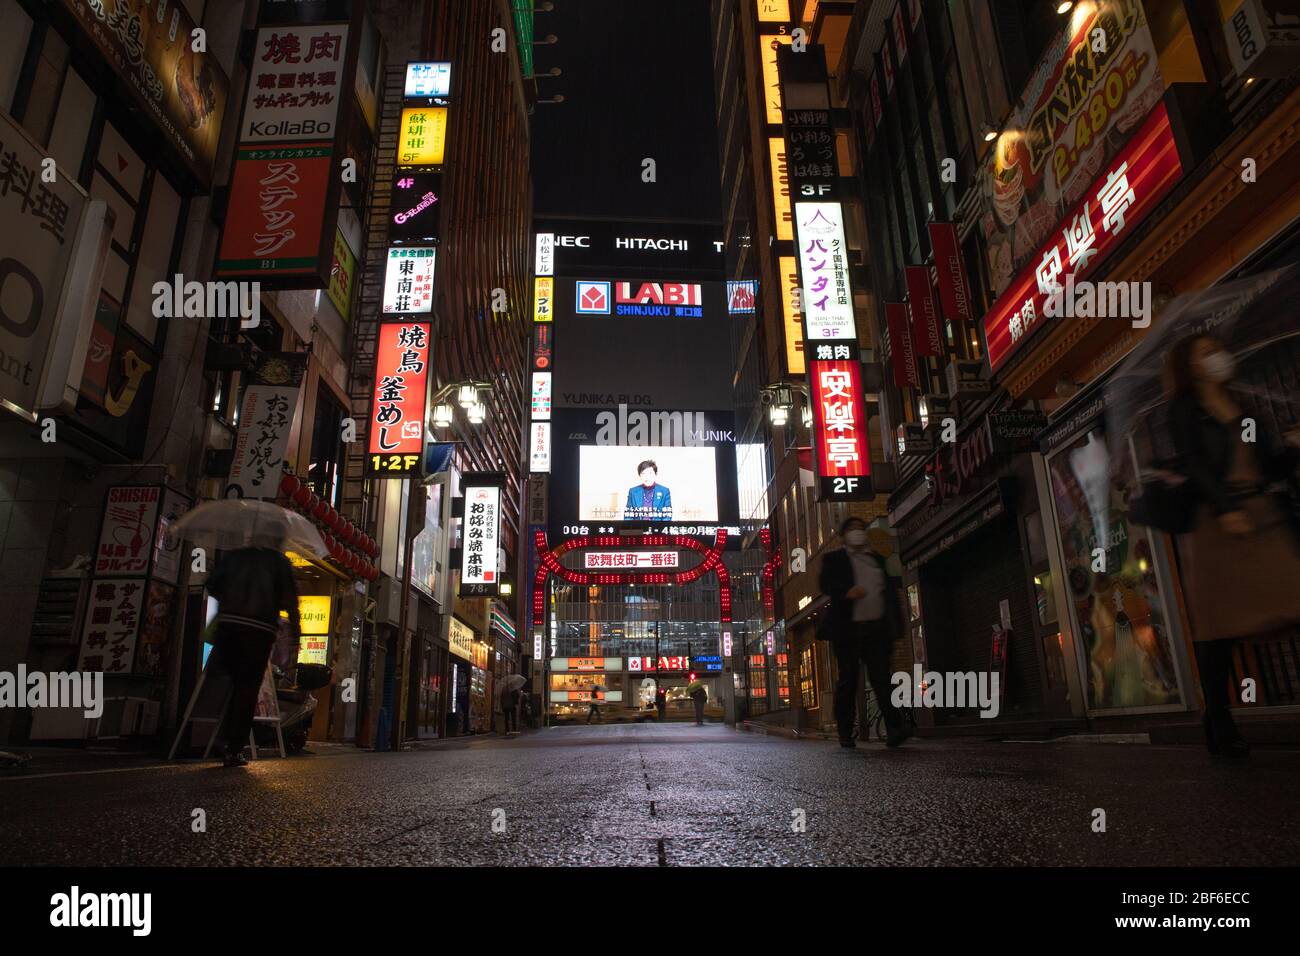 Ein Bildschirm zeigt eine öffentliche Informations-Video-Nachricht von Tokyo Gouverneur Yuriko Koike in Shinjuku berühmten Kabukicho Gebiet in Tokio, Japan am 16. April 2020, inmitten des Ausnahmezustands aufgrund der Ausbreitung des neuartigen Coronavirus. Quelle: AFLO/Alamy Live News Stockfoto